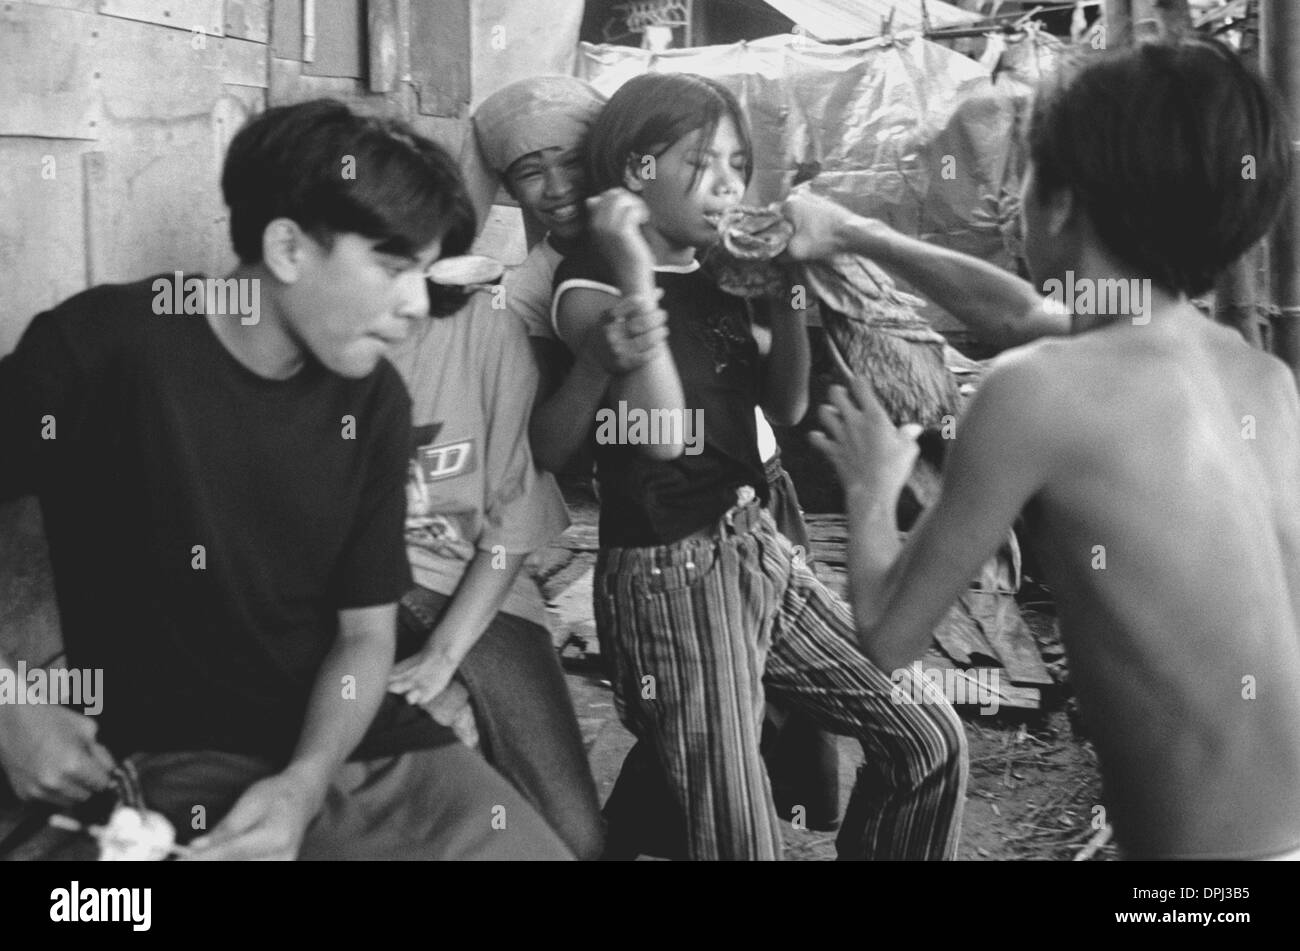 31. August 2006 - Davao City, Philippinen - INDAY zurückhält SOFIAS Arme wie lange-lange droht, sie zu schlagen nach sich zu betrinken und streiten sich um gestohlene Schuhe und einem beliebten TV-Sitcom namens "Meteor Garden." Obwohl wichtig für überleben, Banden im Süden der Philippinen sind nicht immer gastfreundlich zu Mädchen, besonders gemischt wie Demonyo sa Pagasa deren männliche Mitglieder oft p Banden Stockfoto